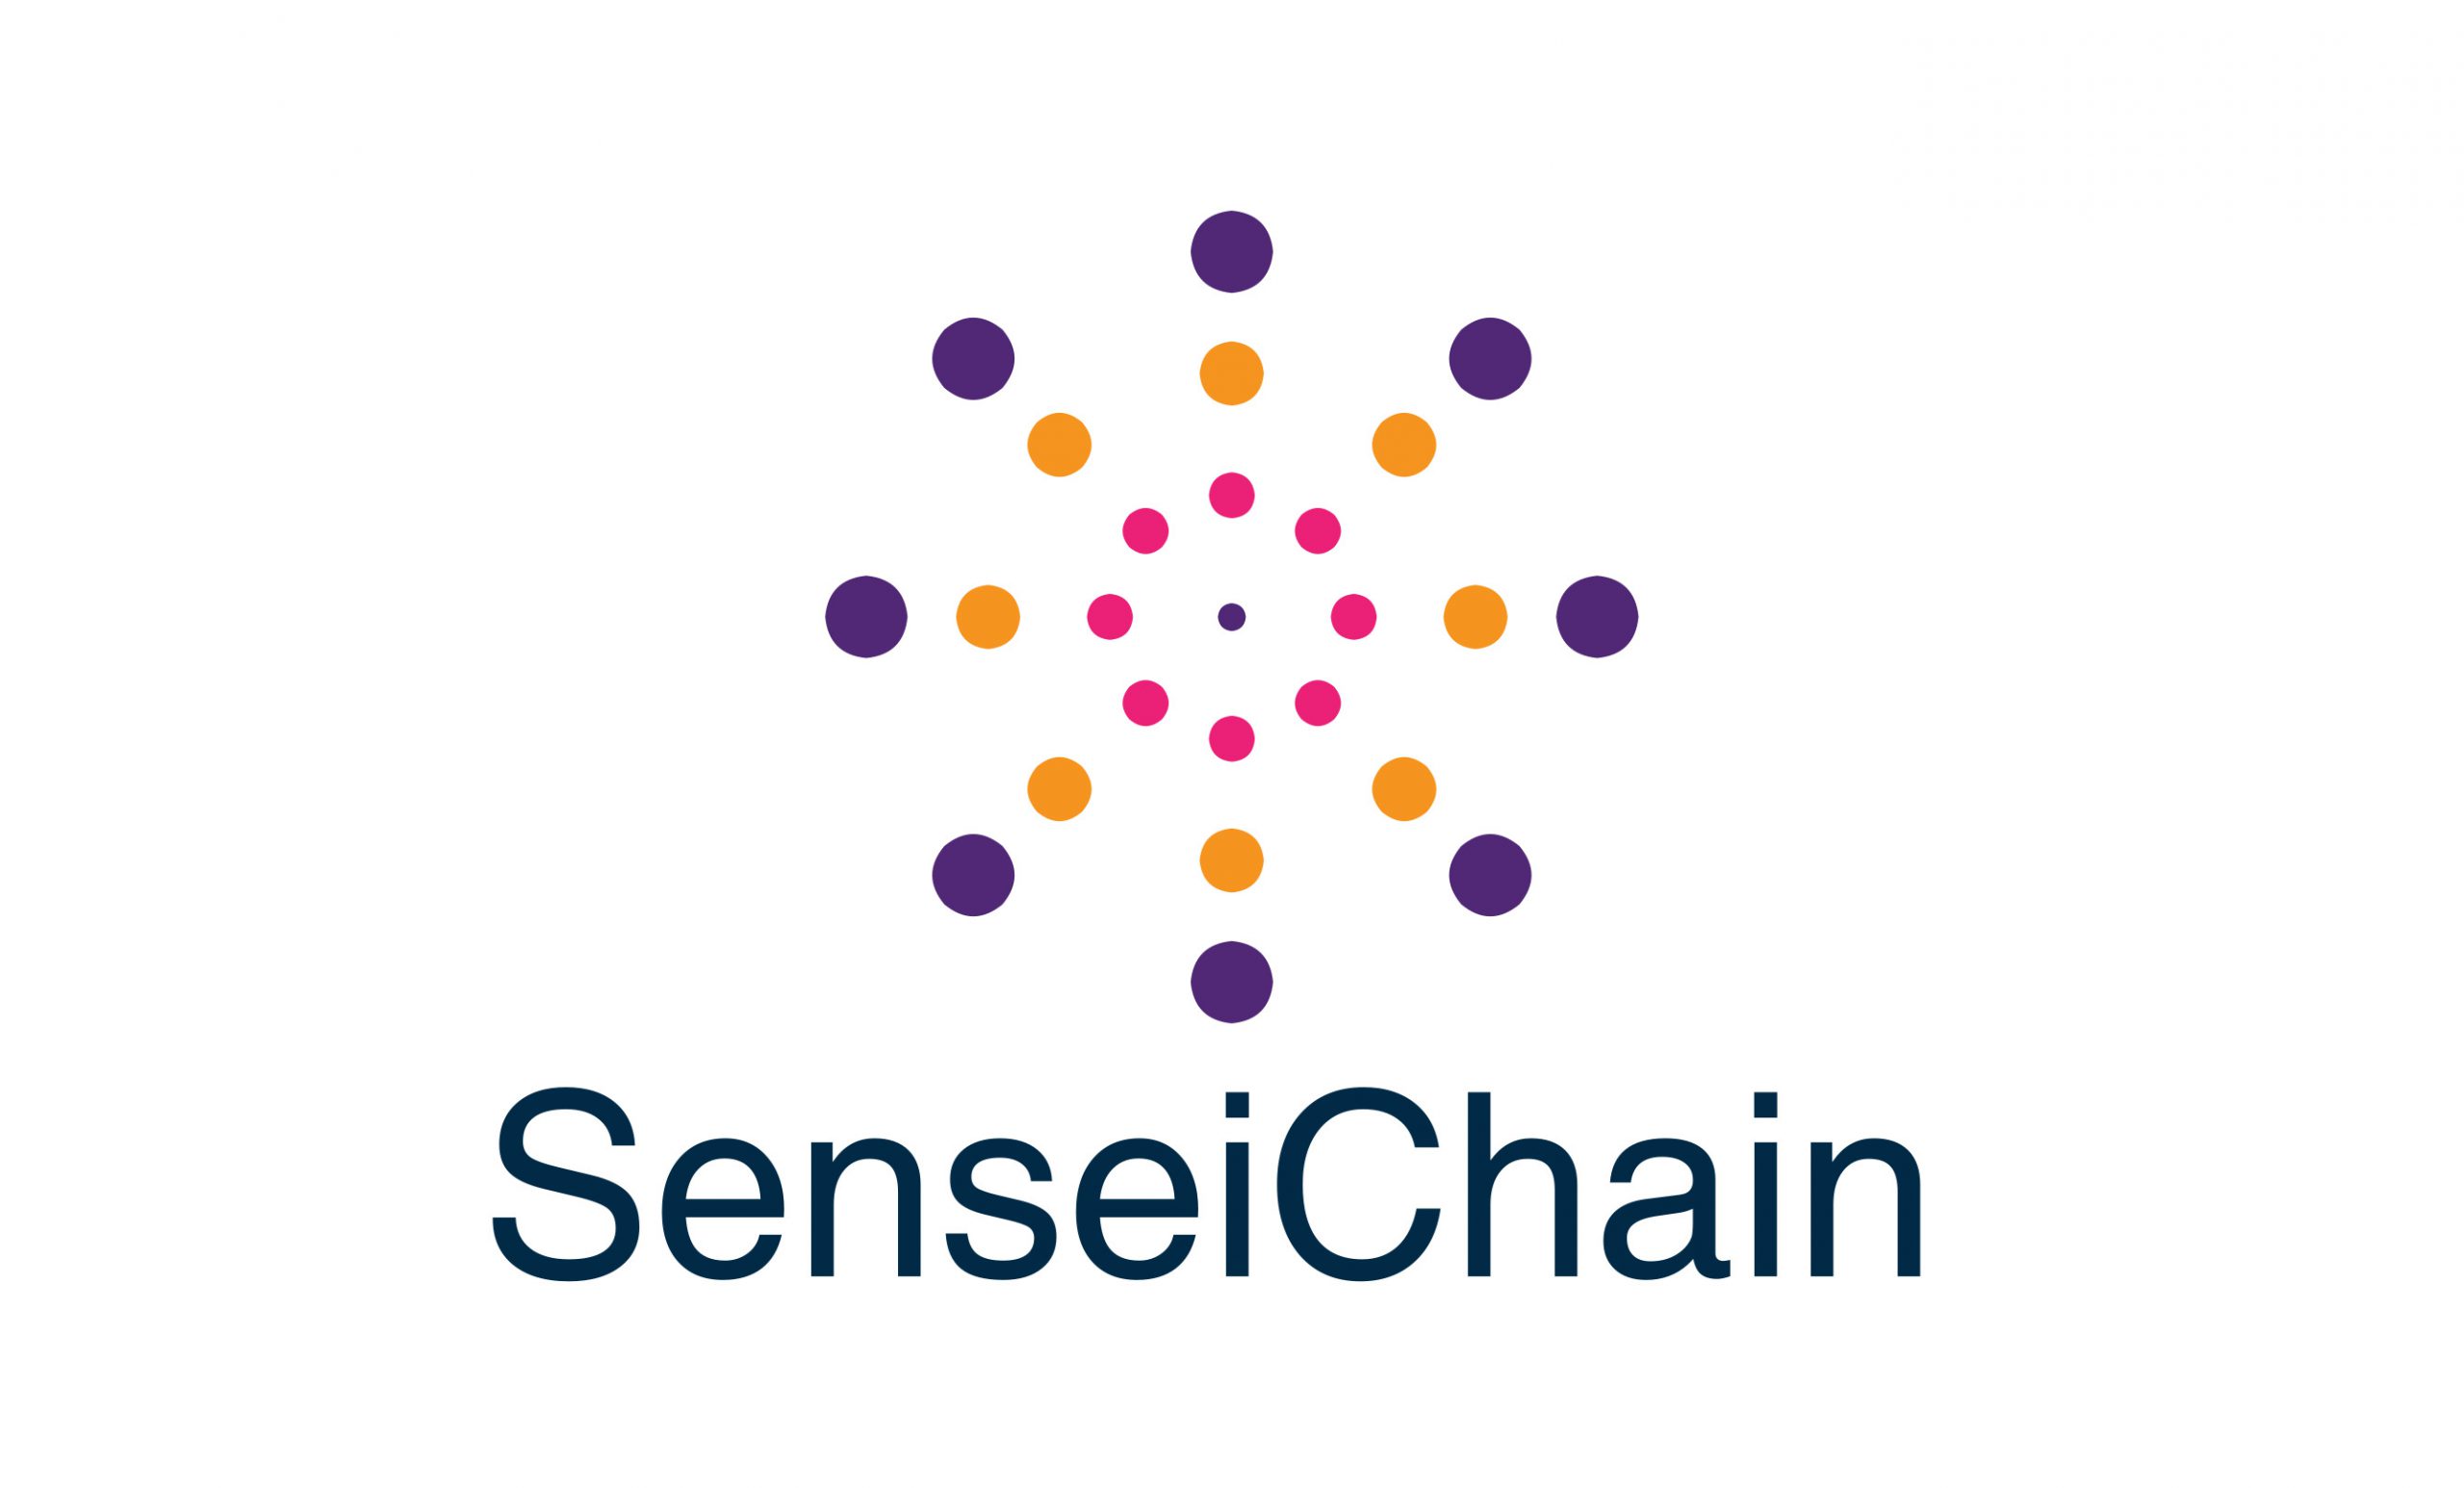 Sensei Chain